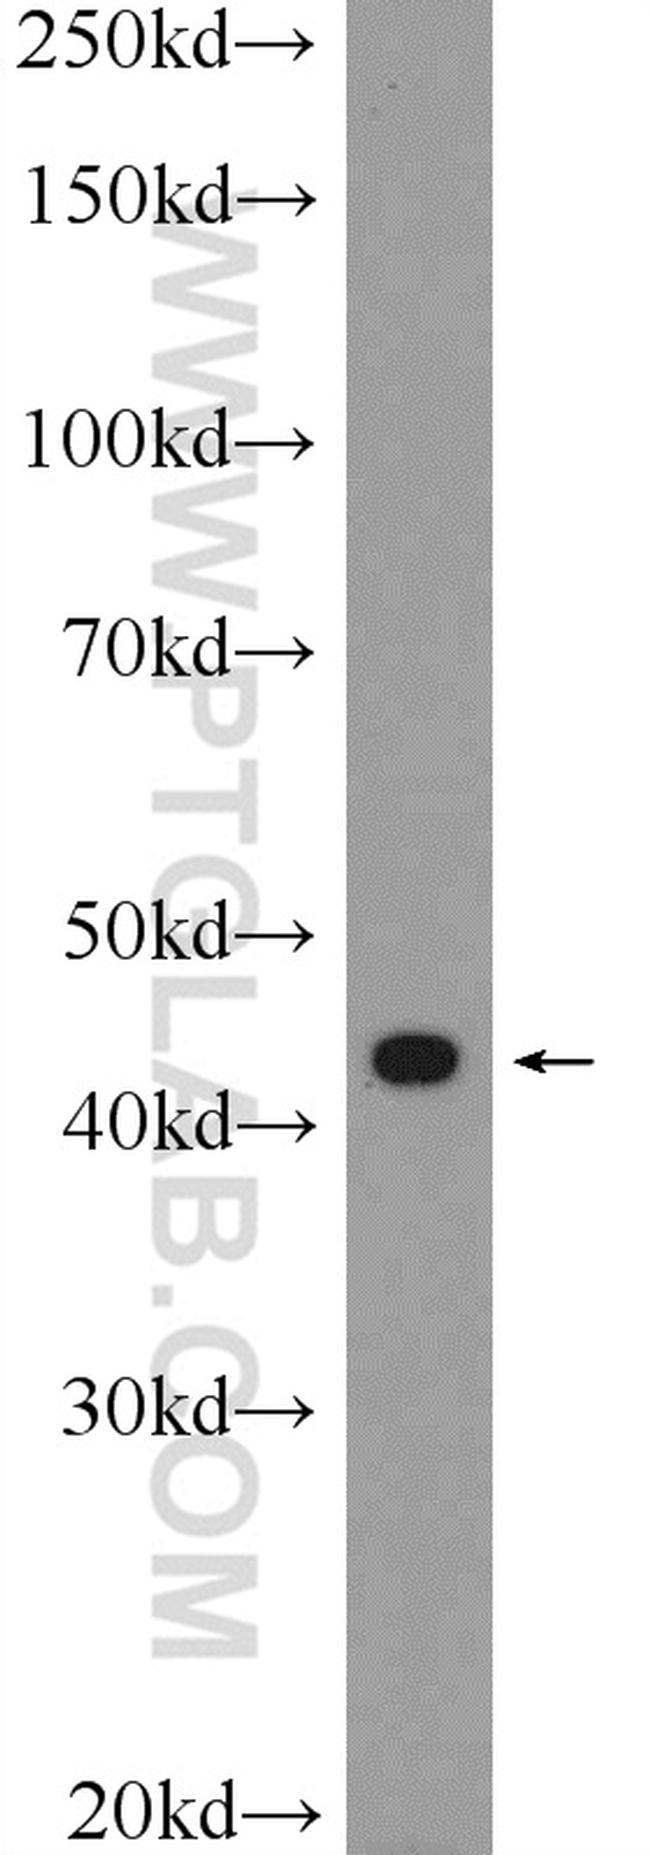 Inhibin beta A Antibody in Western Blot (WB)